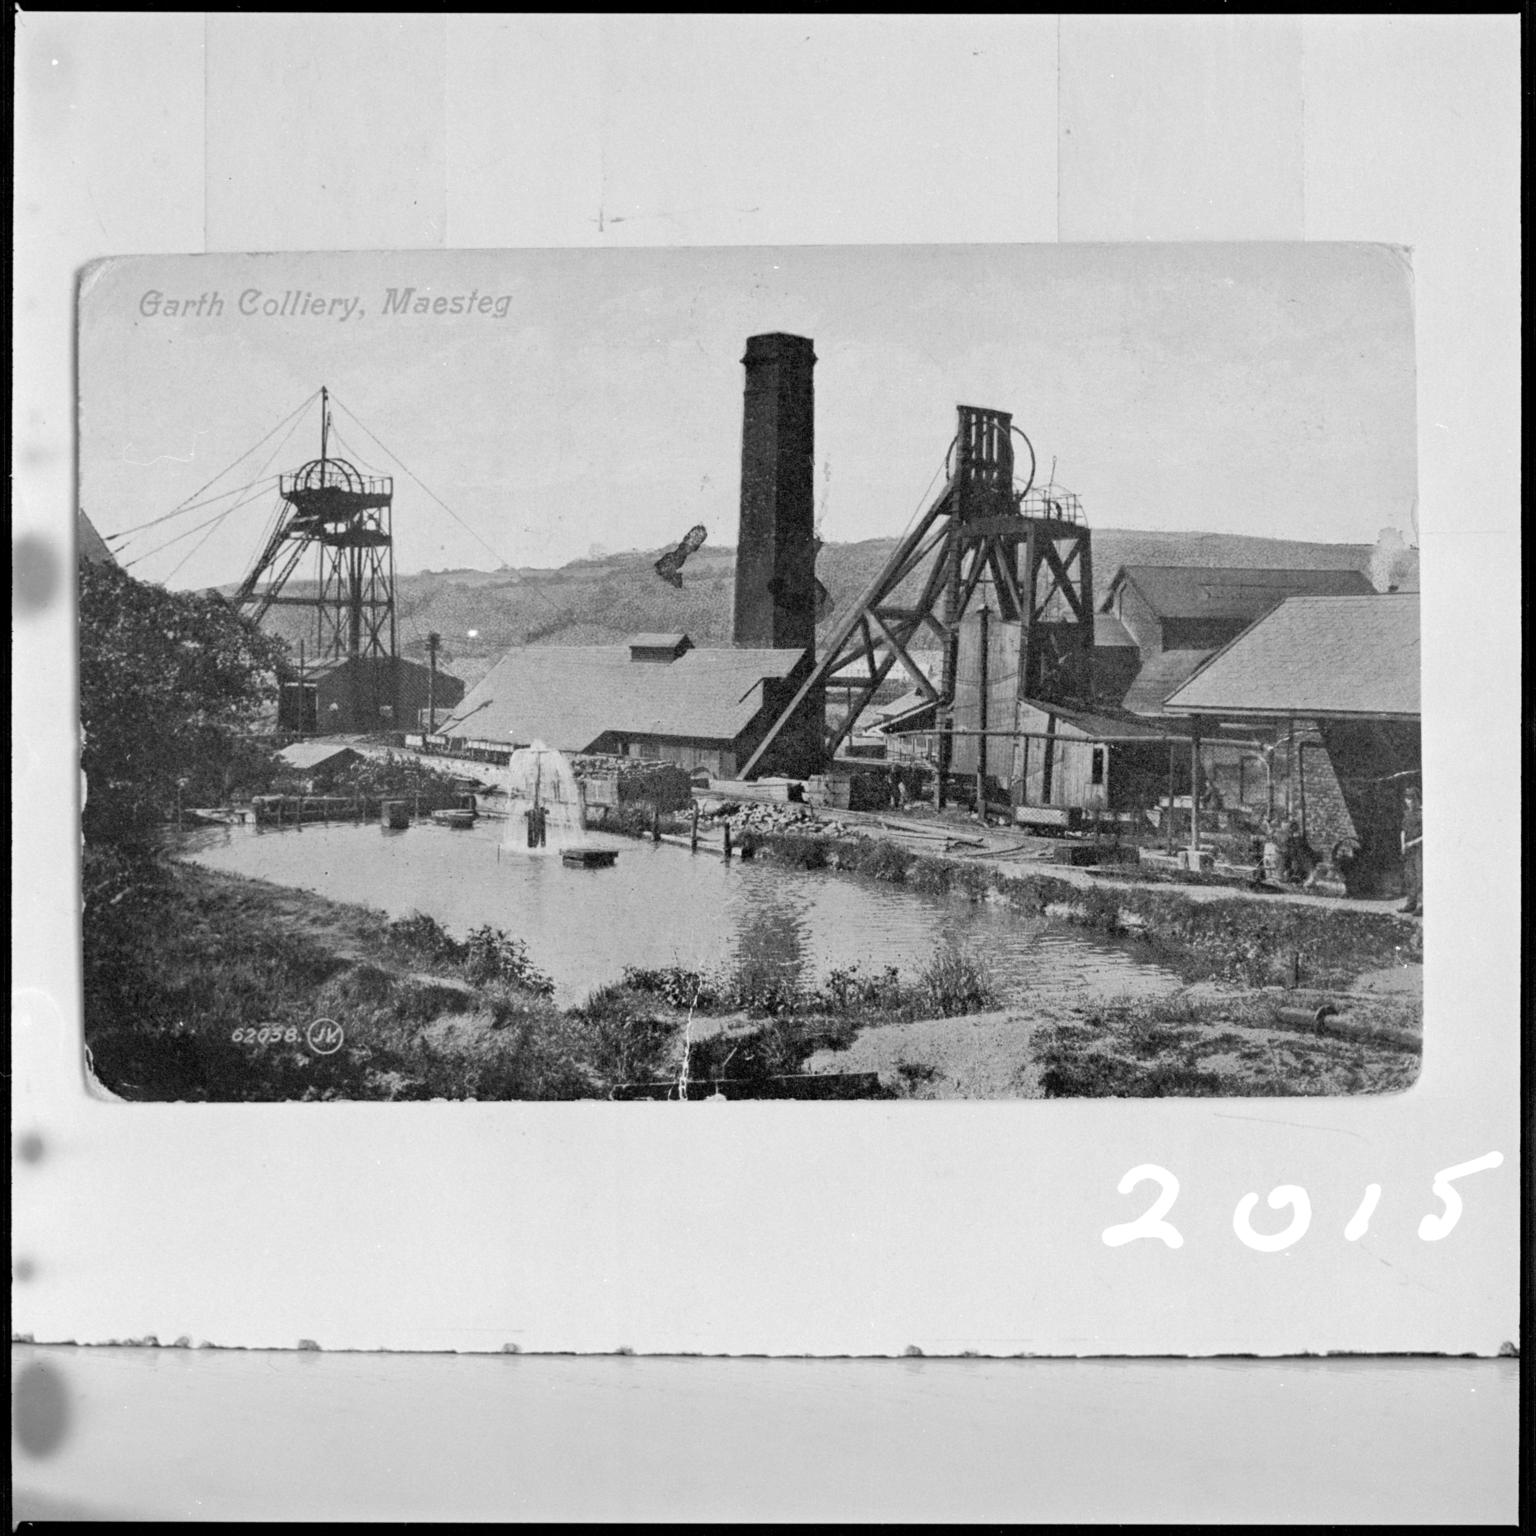 Garth Colliery, Maesteg, film negative